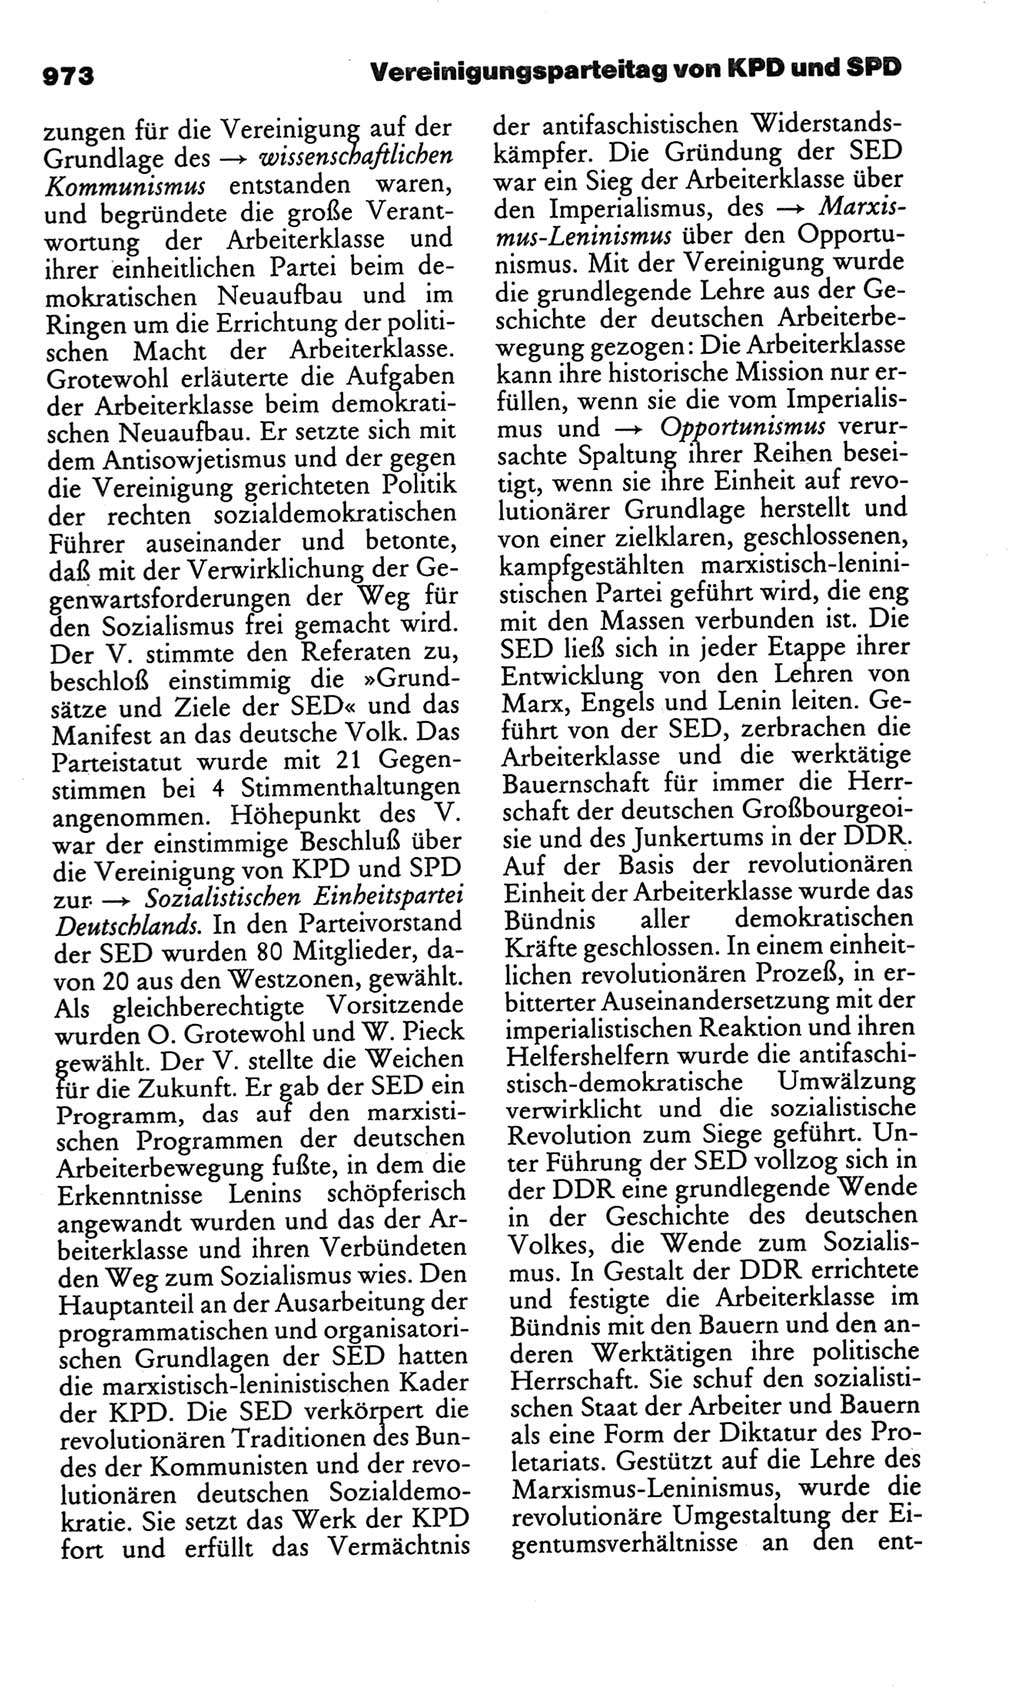 Kleines politisches Wörterbuch [Deutsche Demokratische Republik (DDR)] 1986, Seite 973 (Kl. pol. Wb. DDR 1986, S. 973)